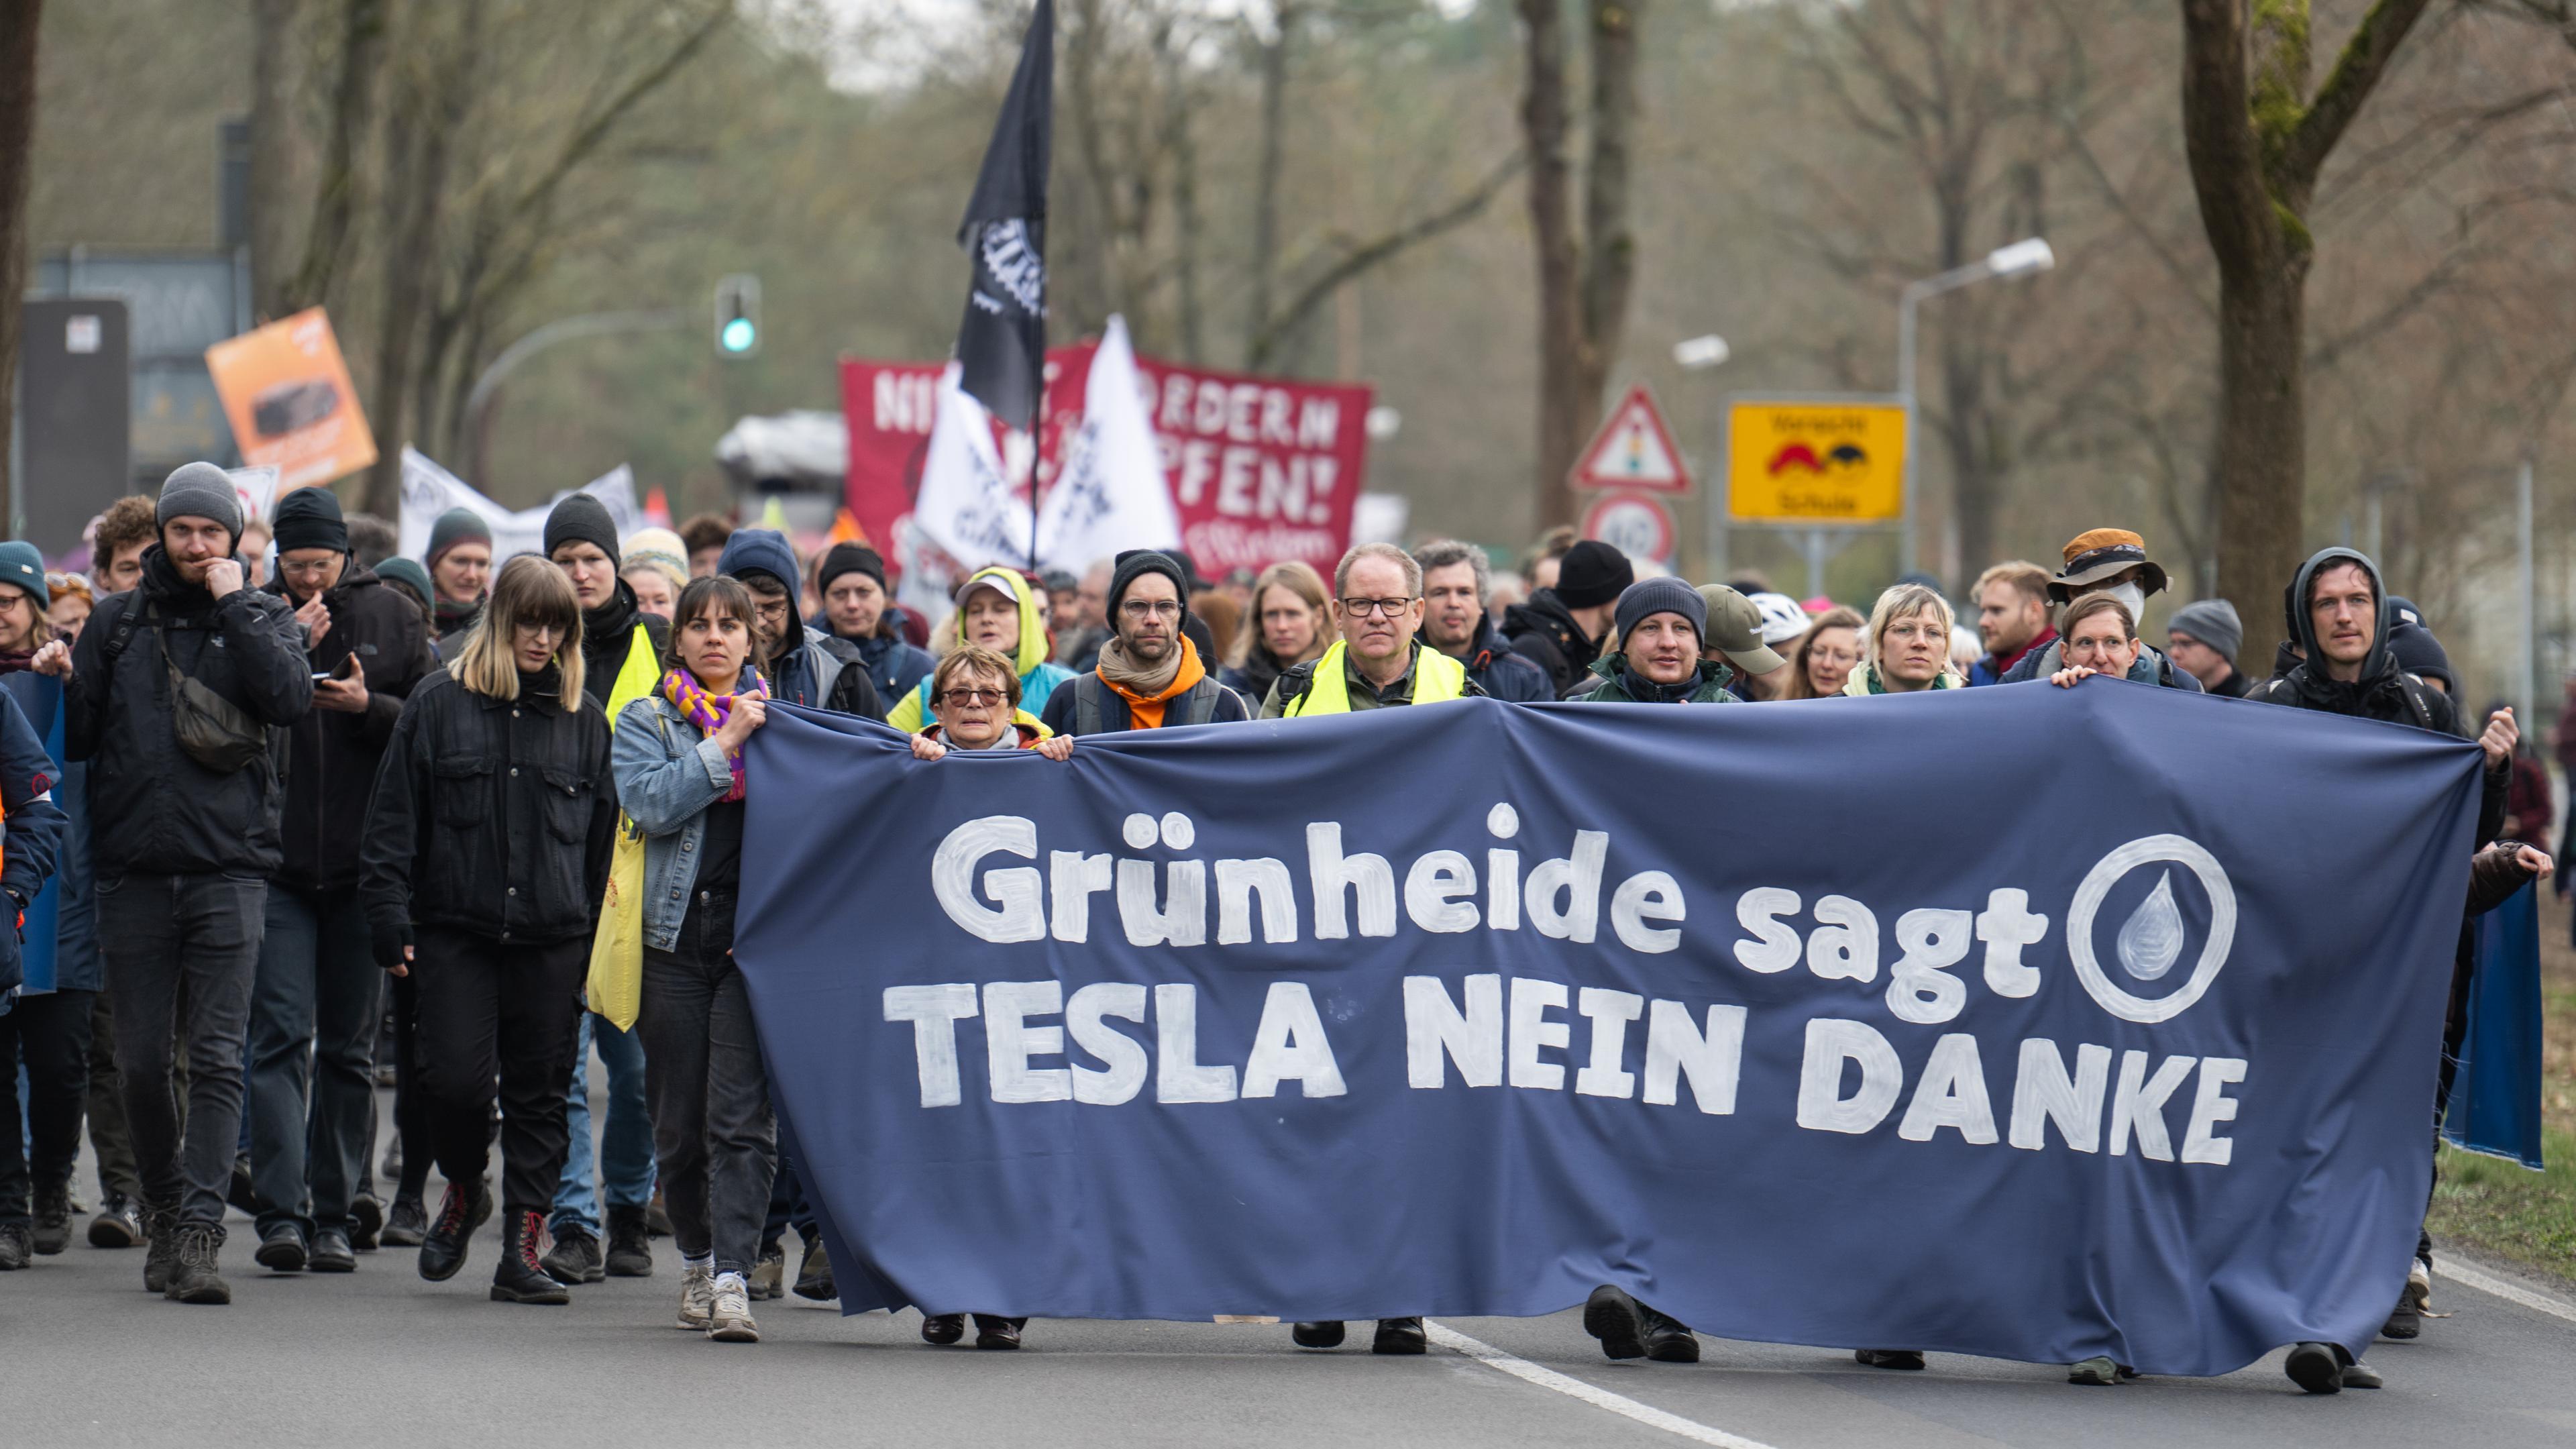 Bei einer Demonstration gegen die Tesla-Erweiterung unter dem Motto «Tesla Nein Danke!» tragen Teilnehmer ein Transparent mit der Aufschrift "Grünheide sagt Tesla nein danke".